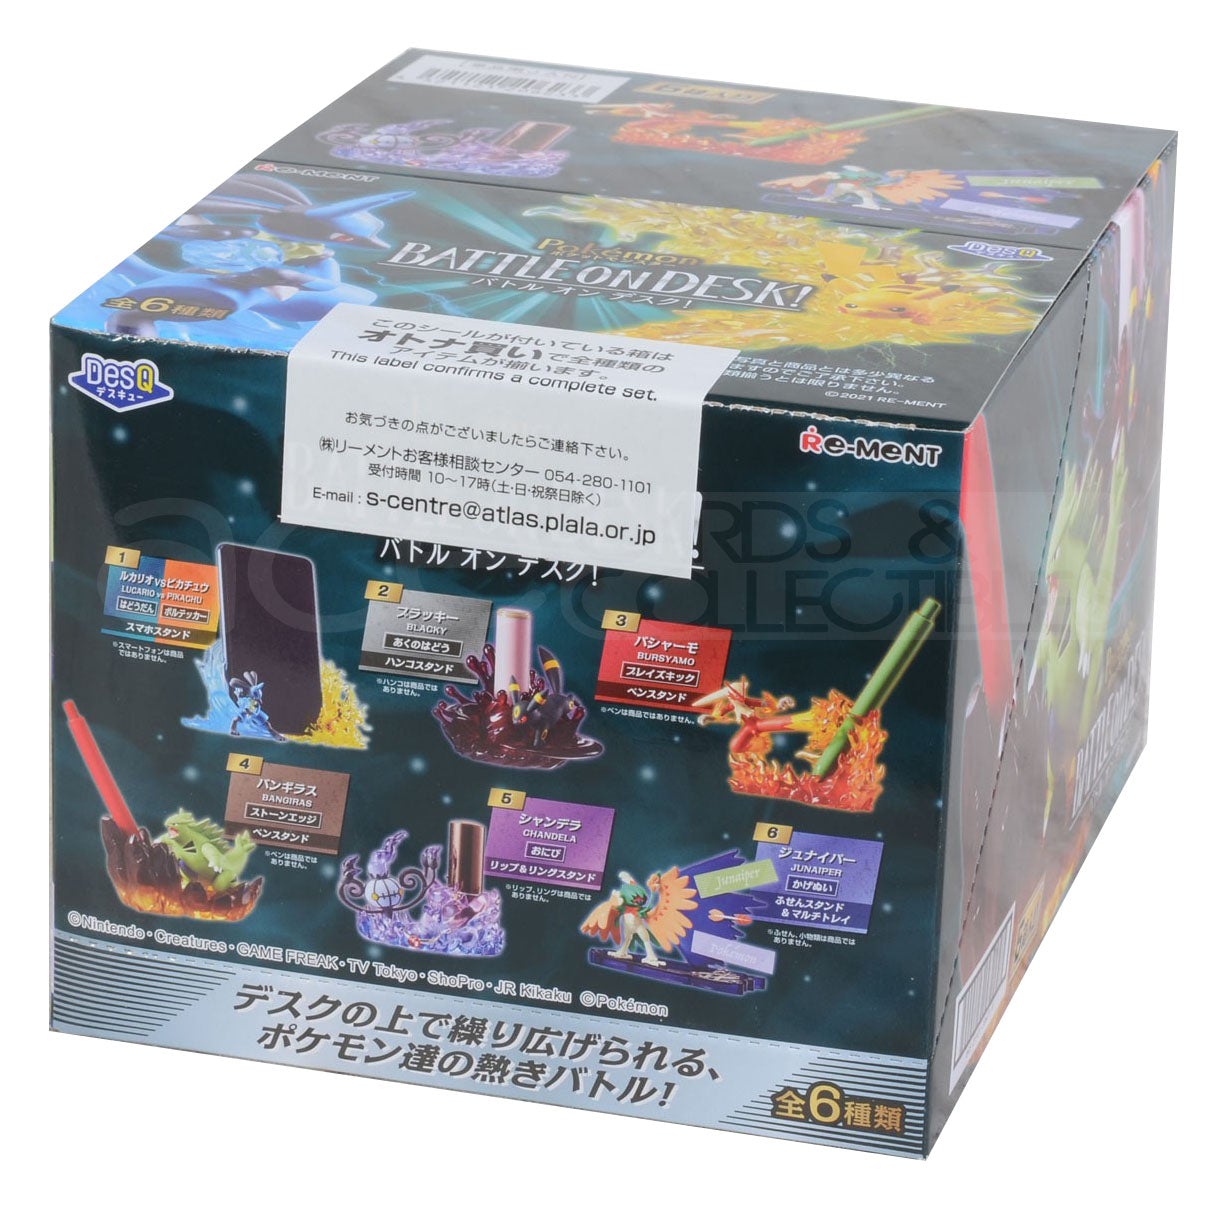 Re-Ment Pokemon Desktop Figure Battle on Desk-Single Box (Random)-Re-Ment-Ace Cards & Collectibles